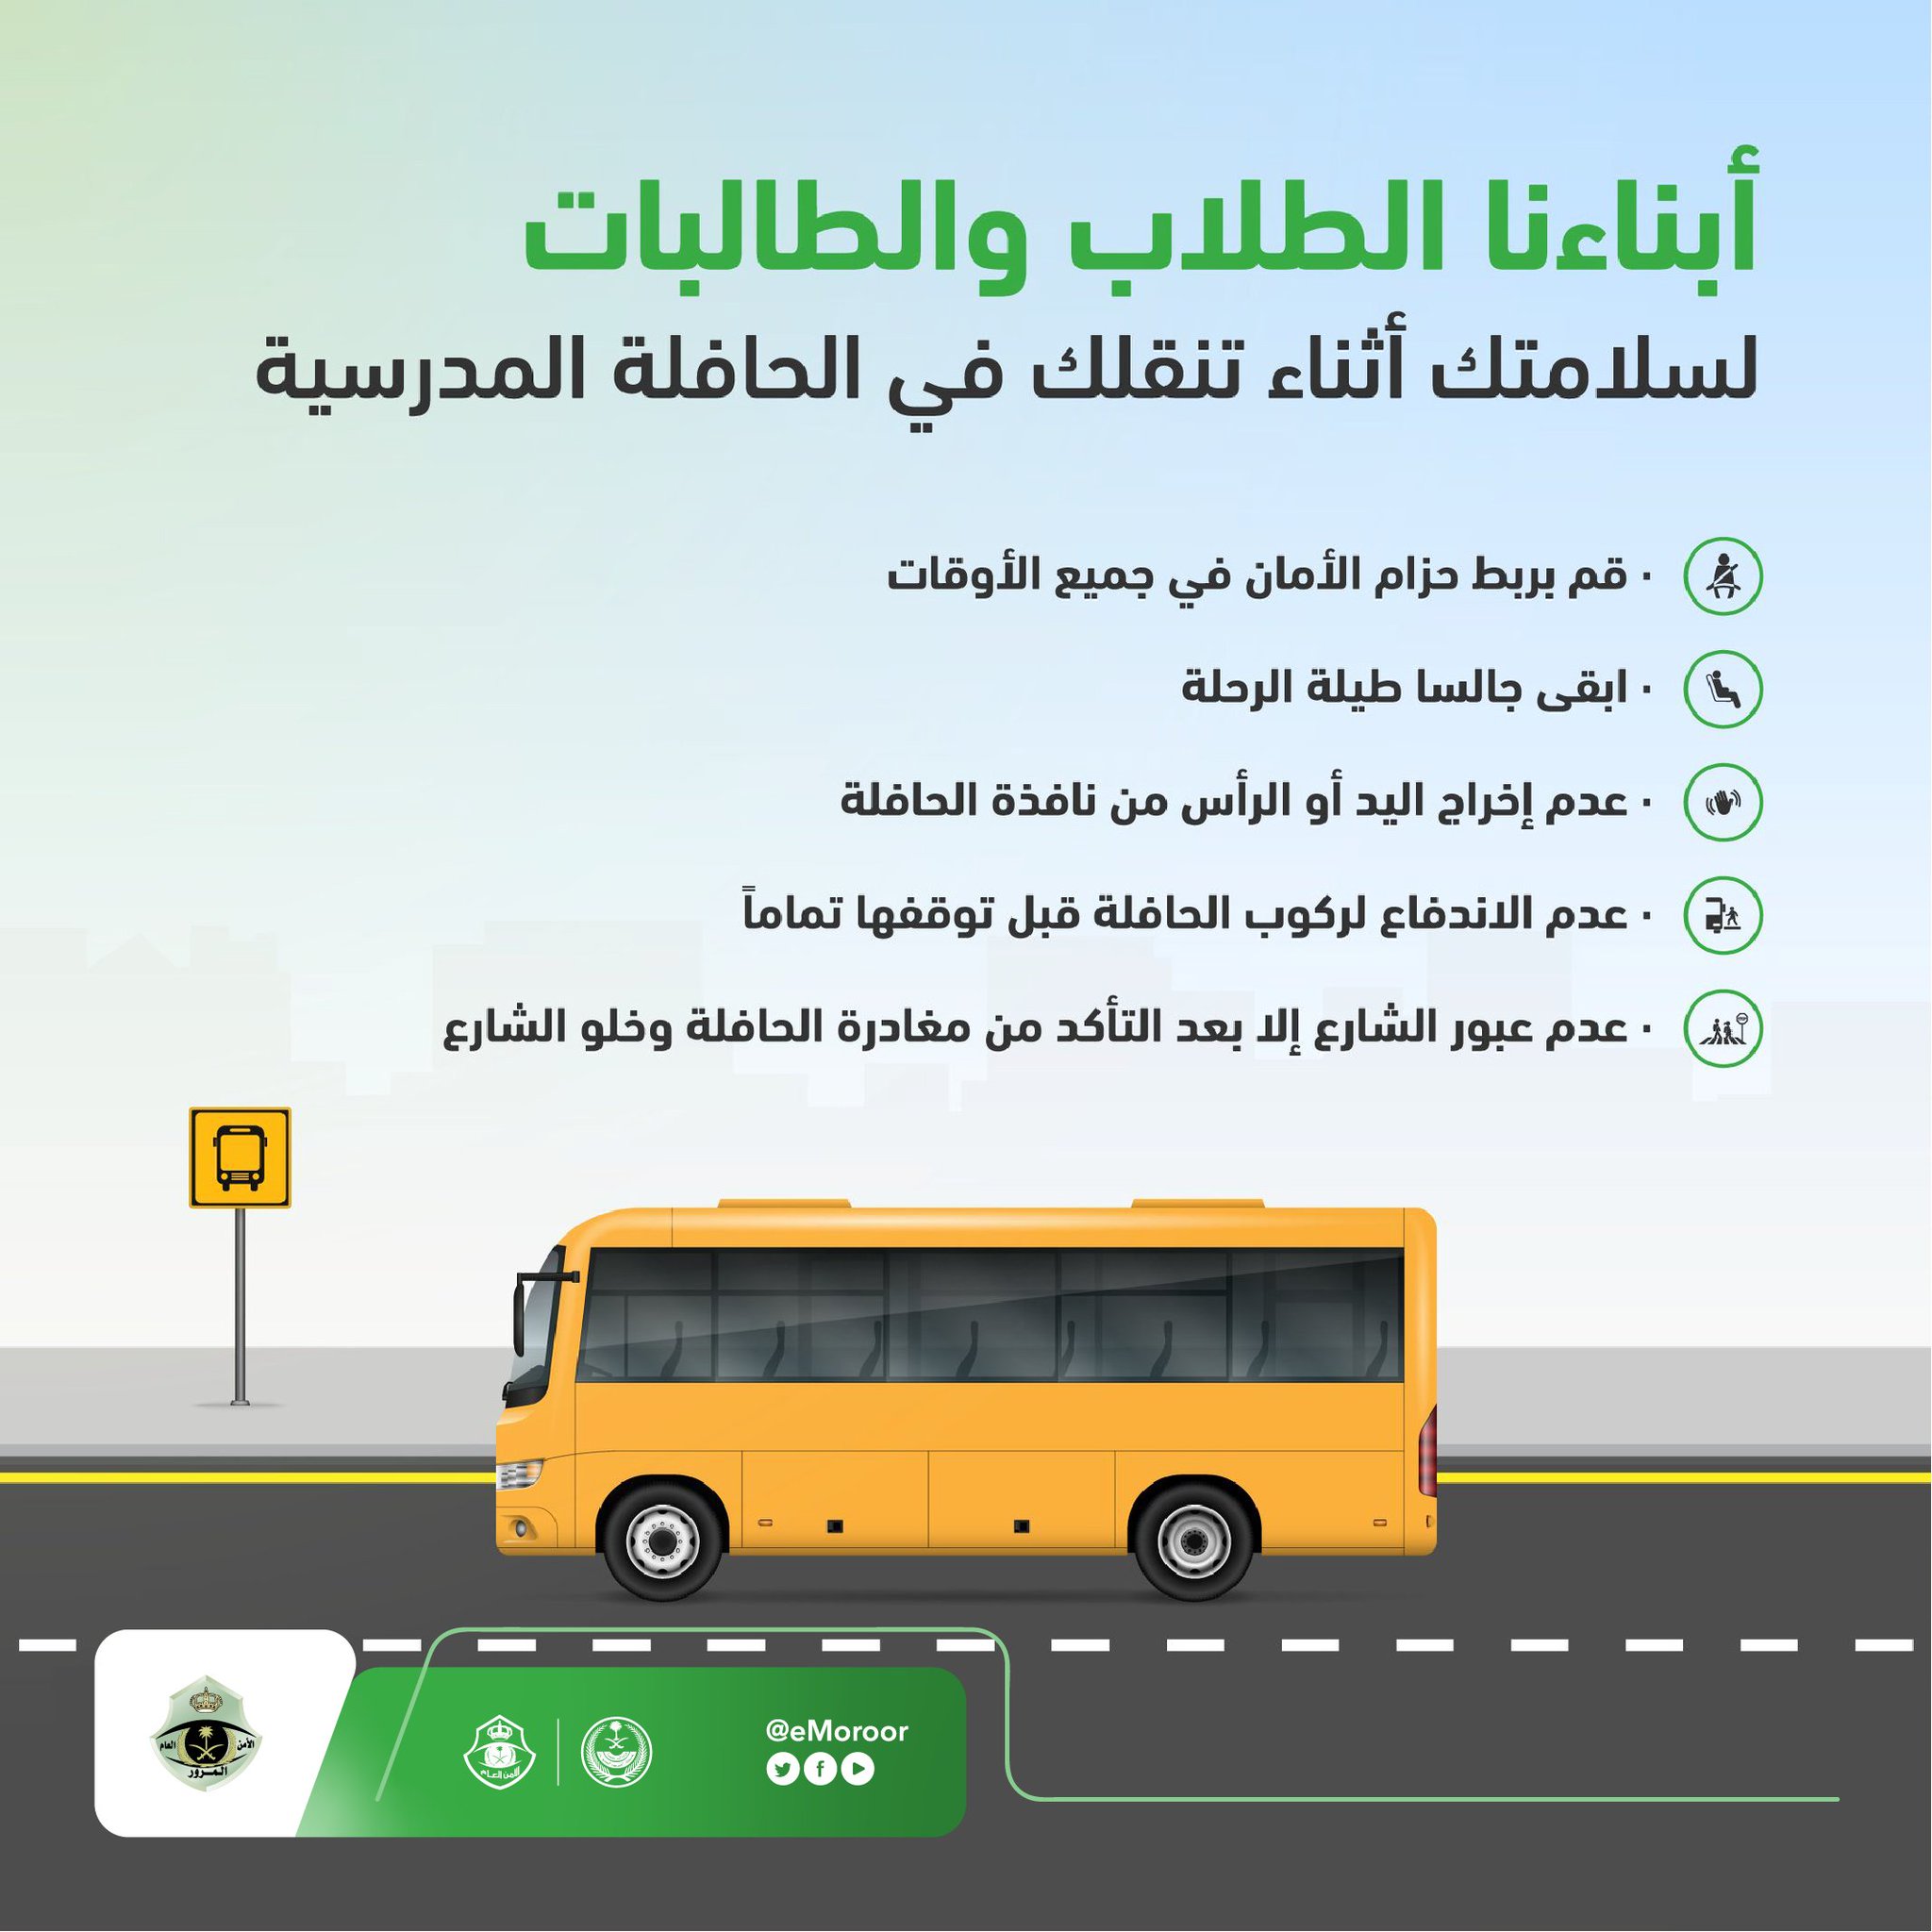 المرور السعودي تُصدر بعض الإرشادات للطلاب والطالبات وأولياء أمورهم بمناسبة عودة الدراسة 2